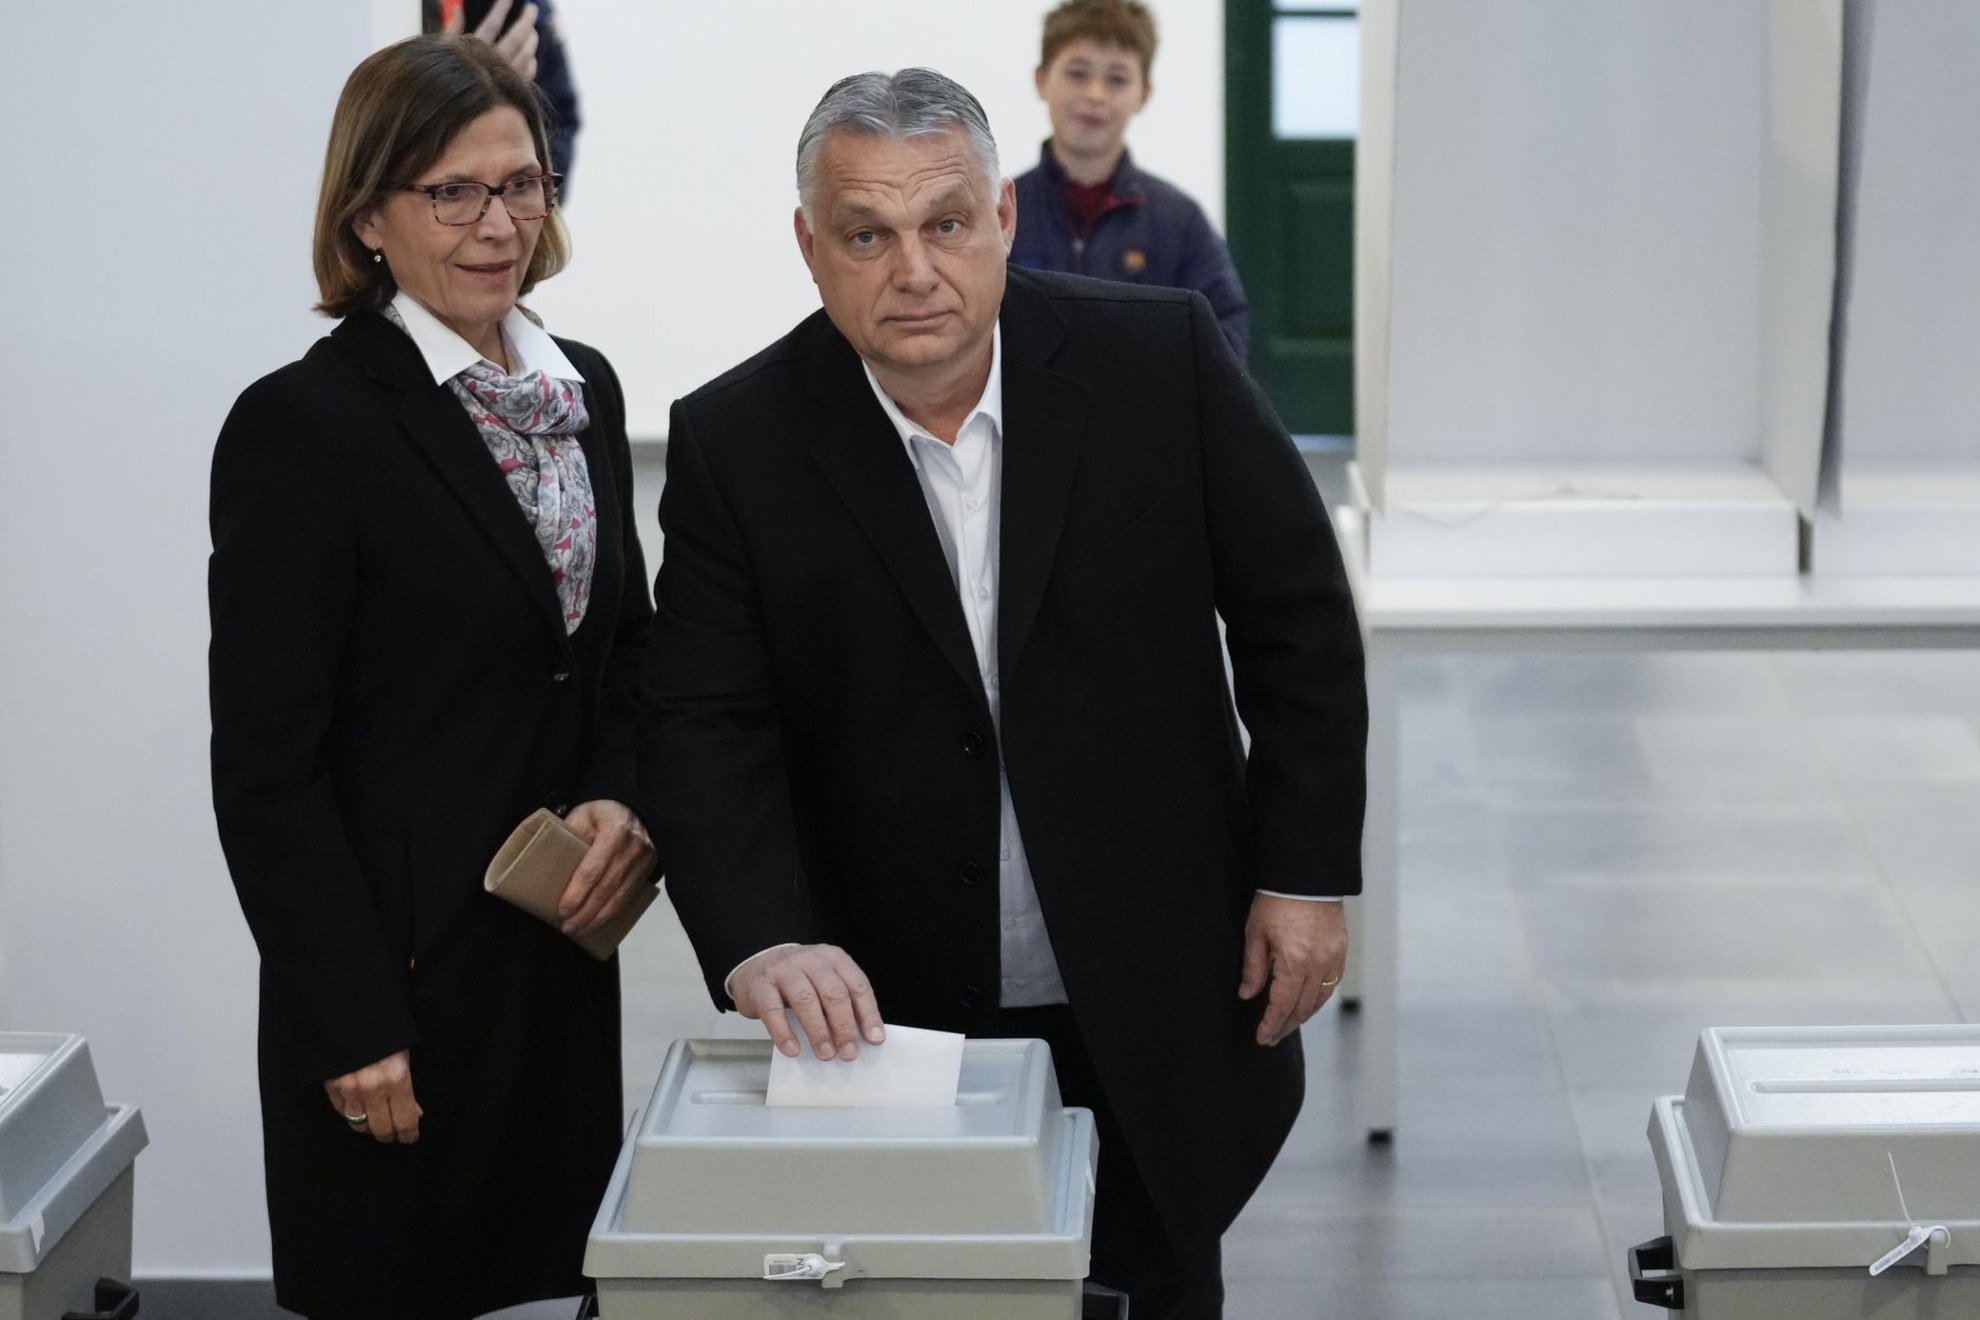 Ue e Orban alla resa dei conti: Bruxelles potrebbe togliere i fondi all'autocrate di Budapest